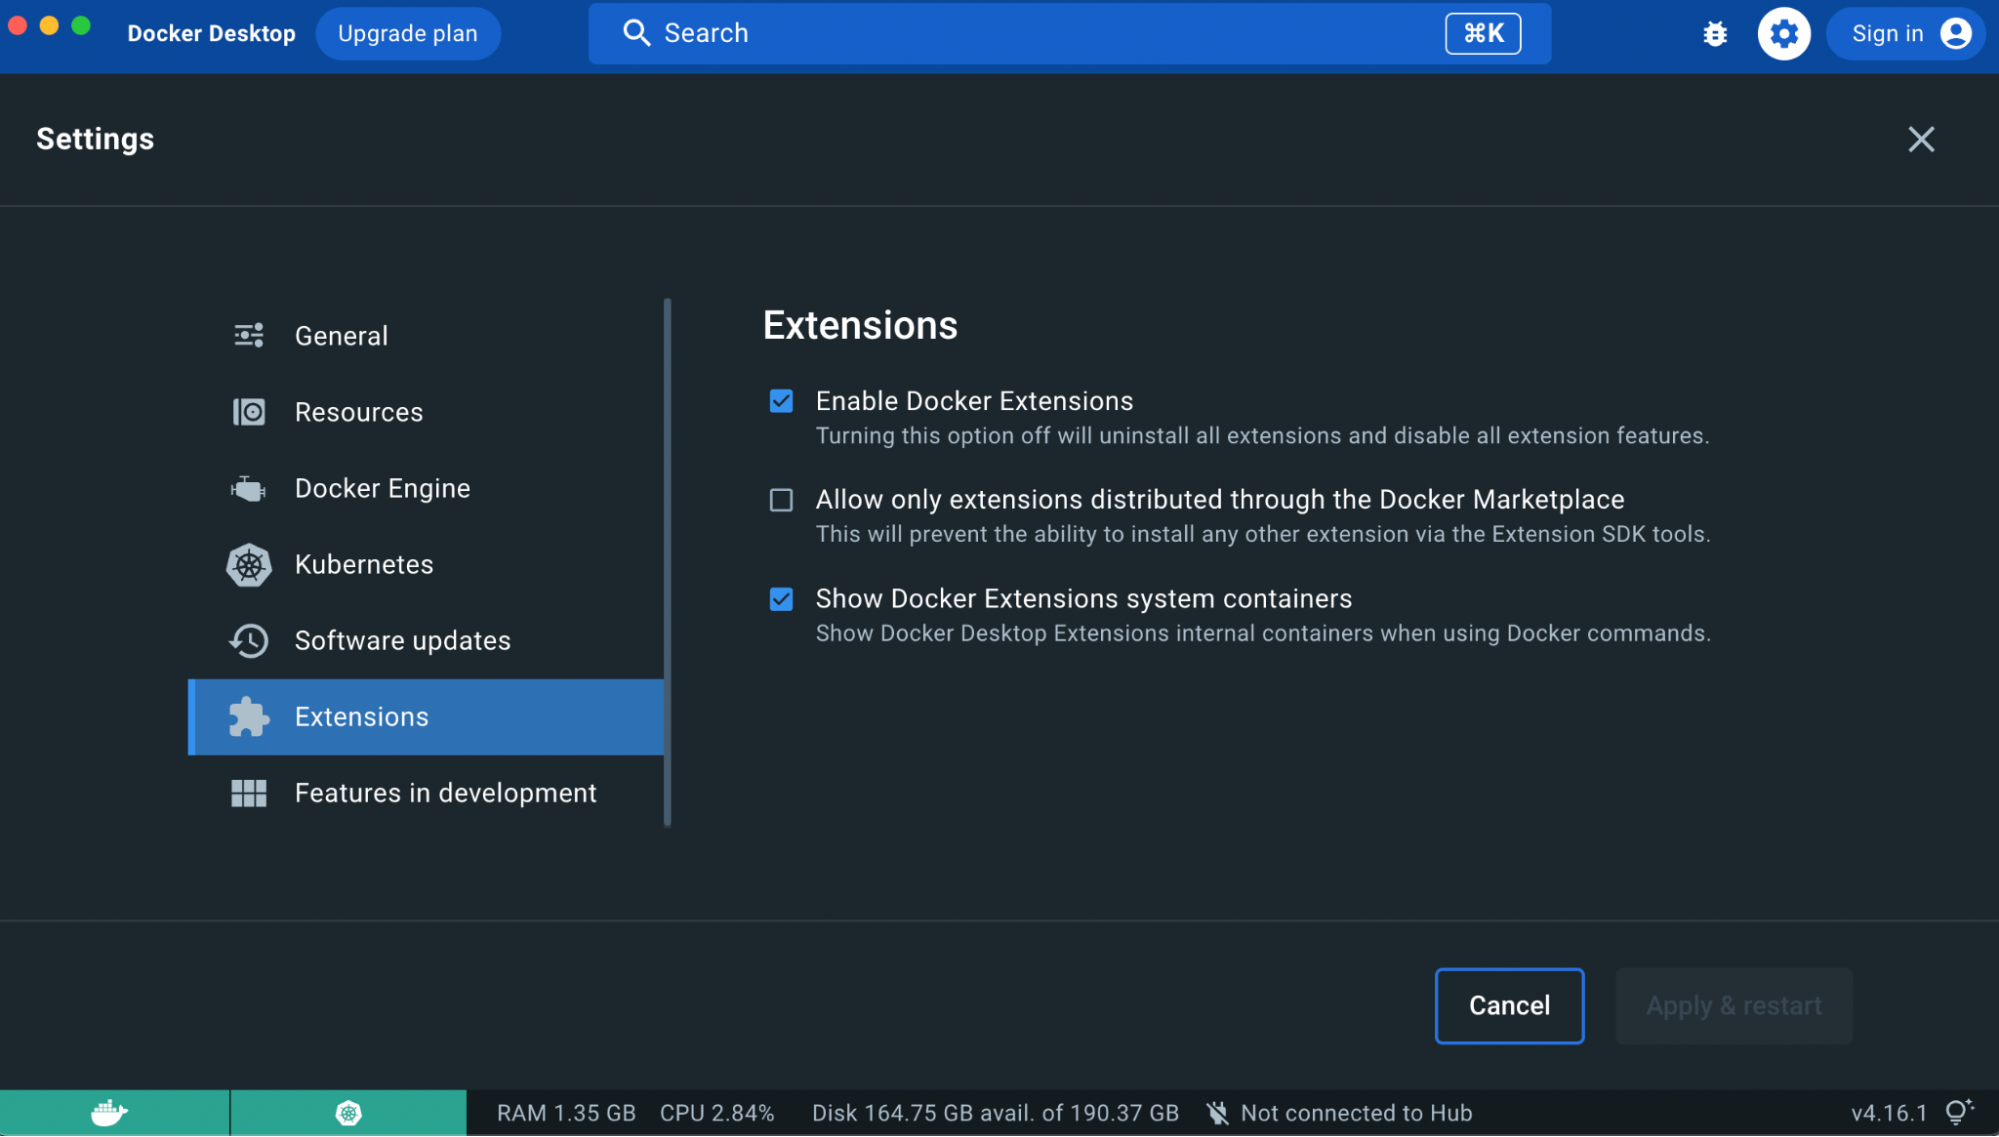 Enable docker extensions under settings on docker desktop.